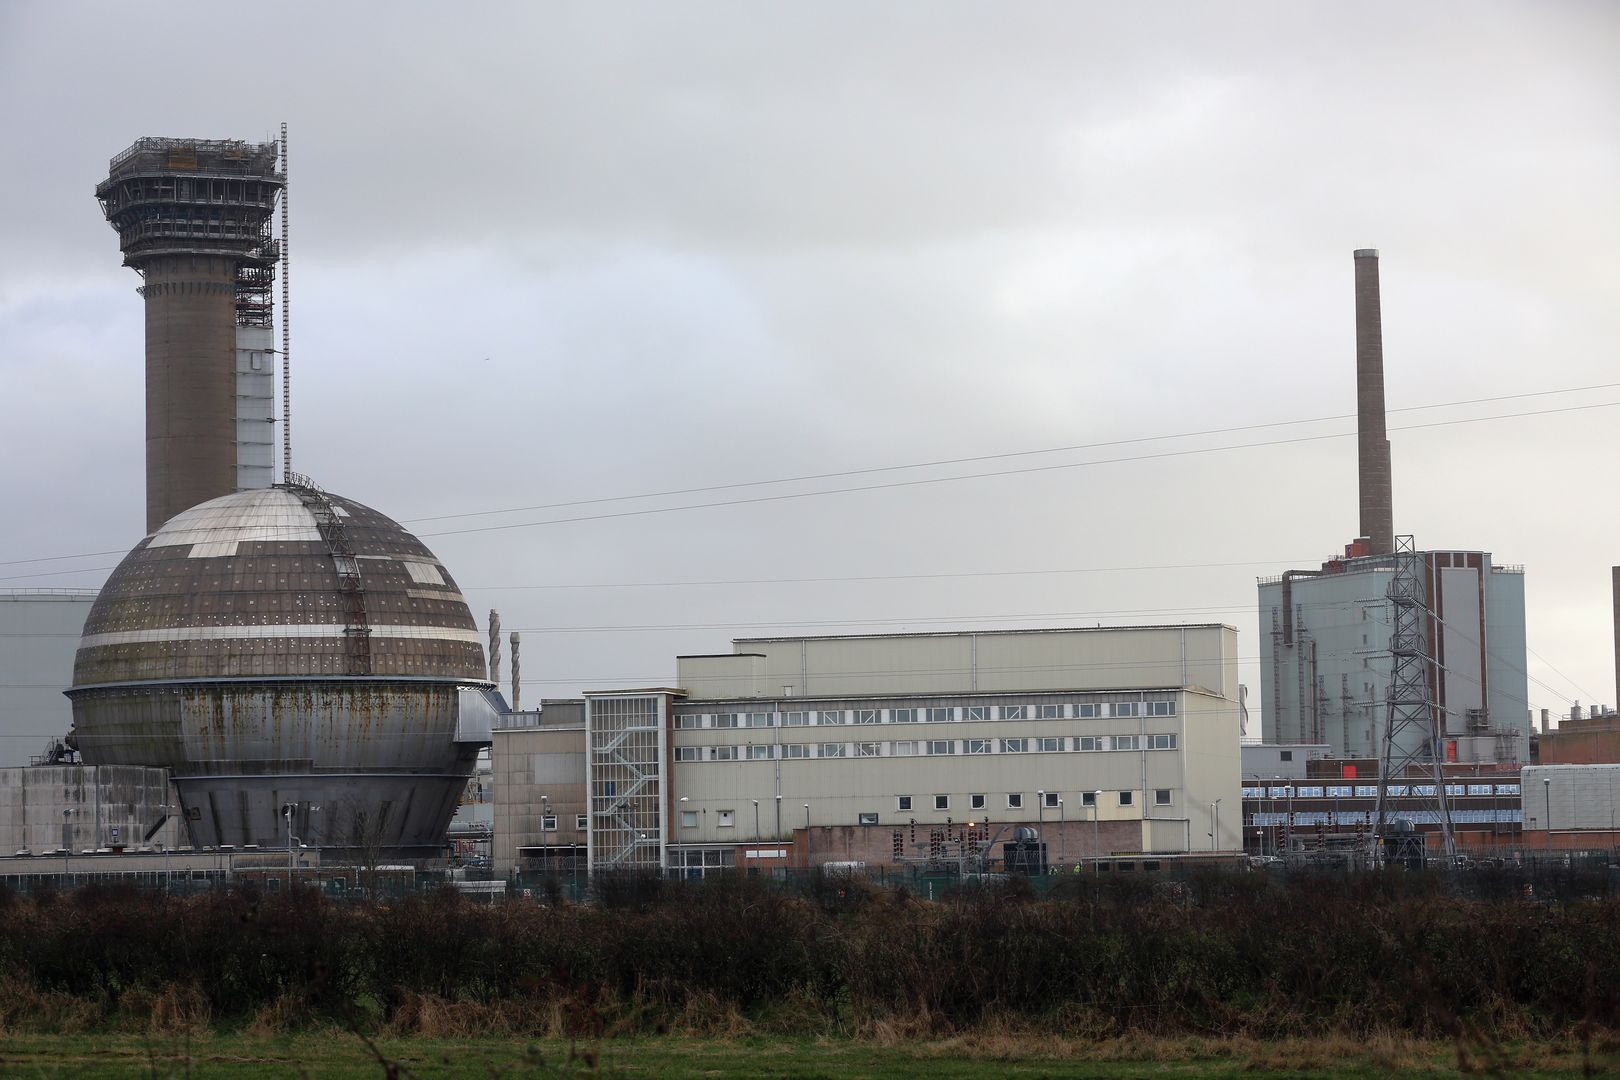 Saperzy w brytyjskiej elektrowni atomowej. W "najgroźniejszym miejscu Europy" znaleźli łatwopalne substancje chemiczne.